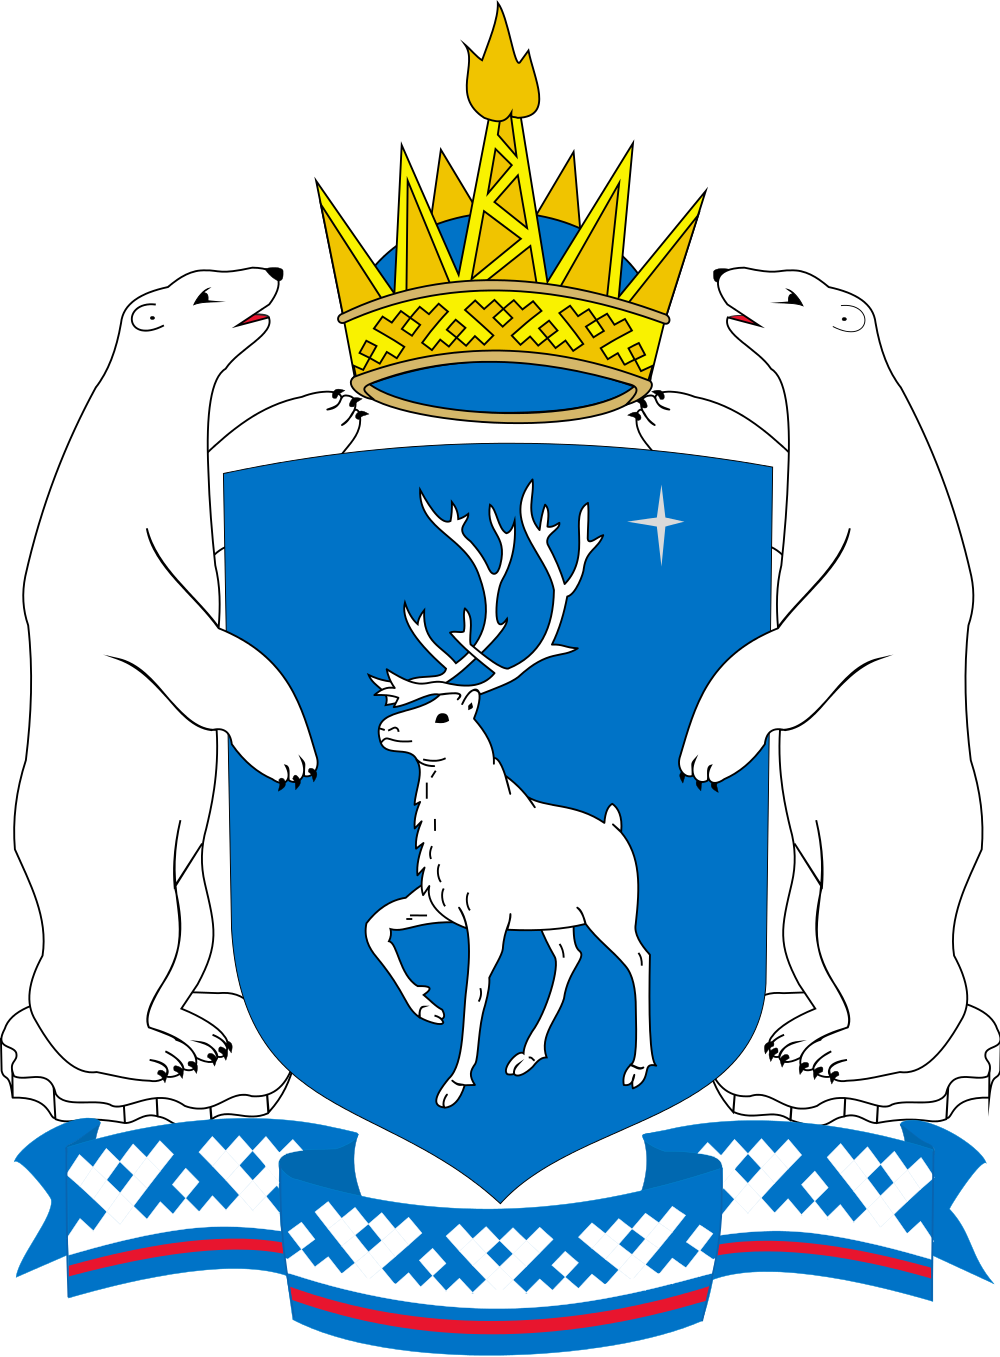 Герб Ямало-Ненецкого автономного округа